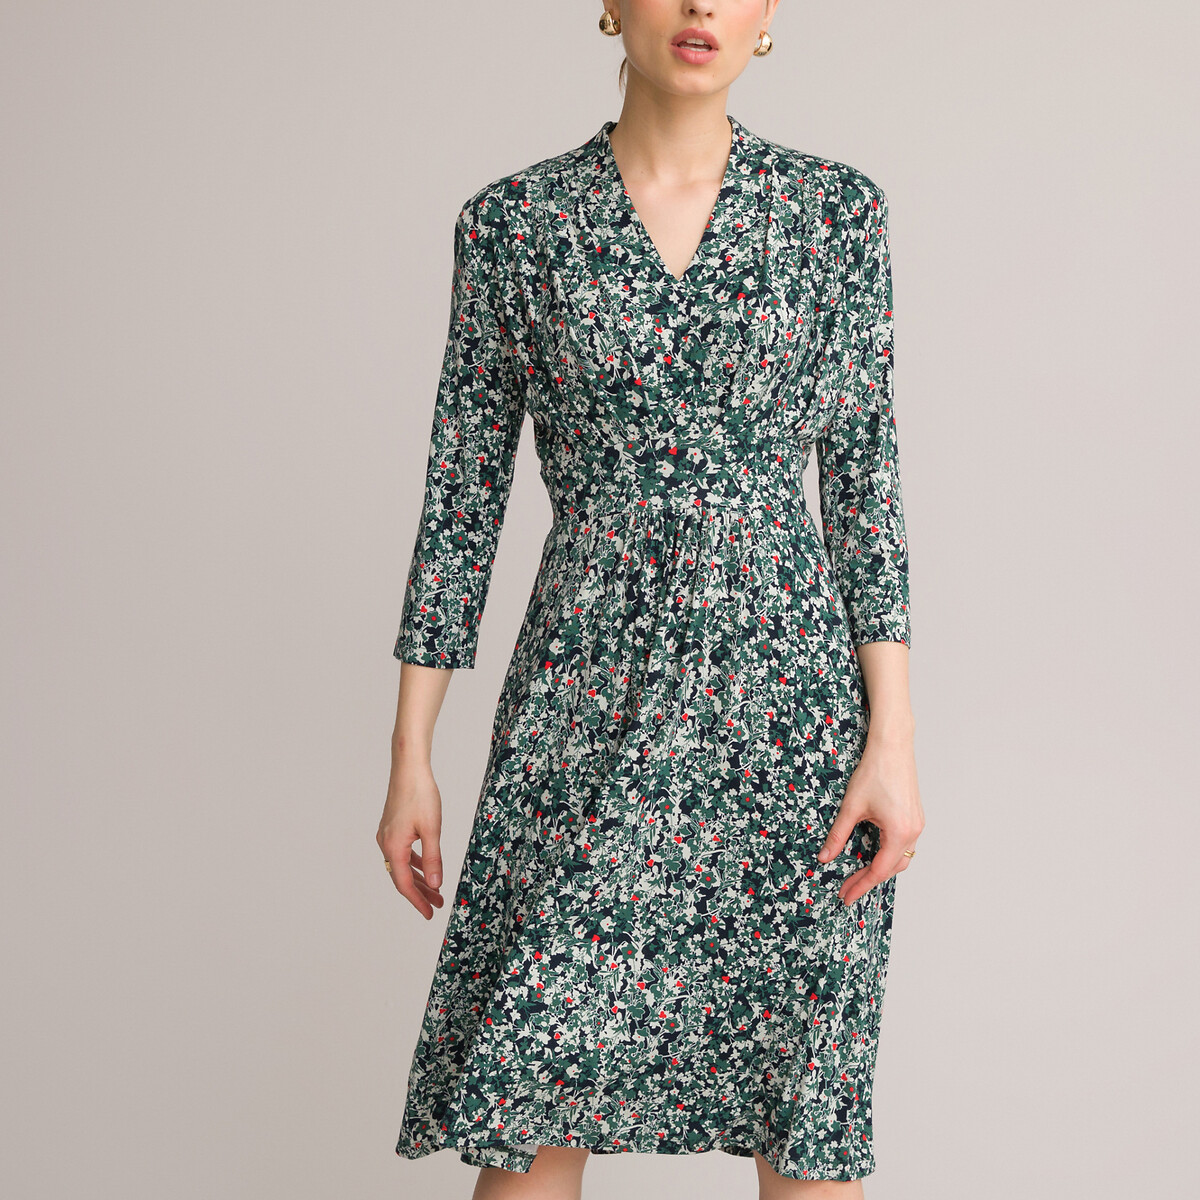 Платье-миди ANNE WEYBURN Платье-миди Расклешенное с цветочным принтом 42 зеленый, размер 42 - фото 2